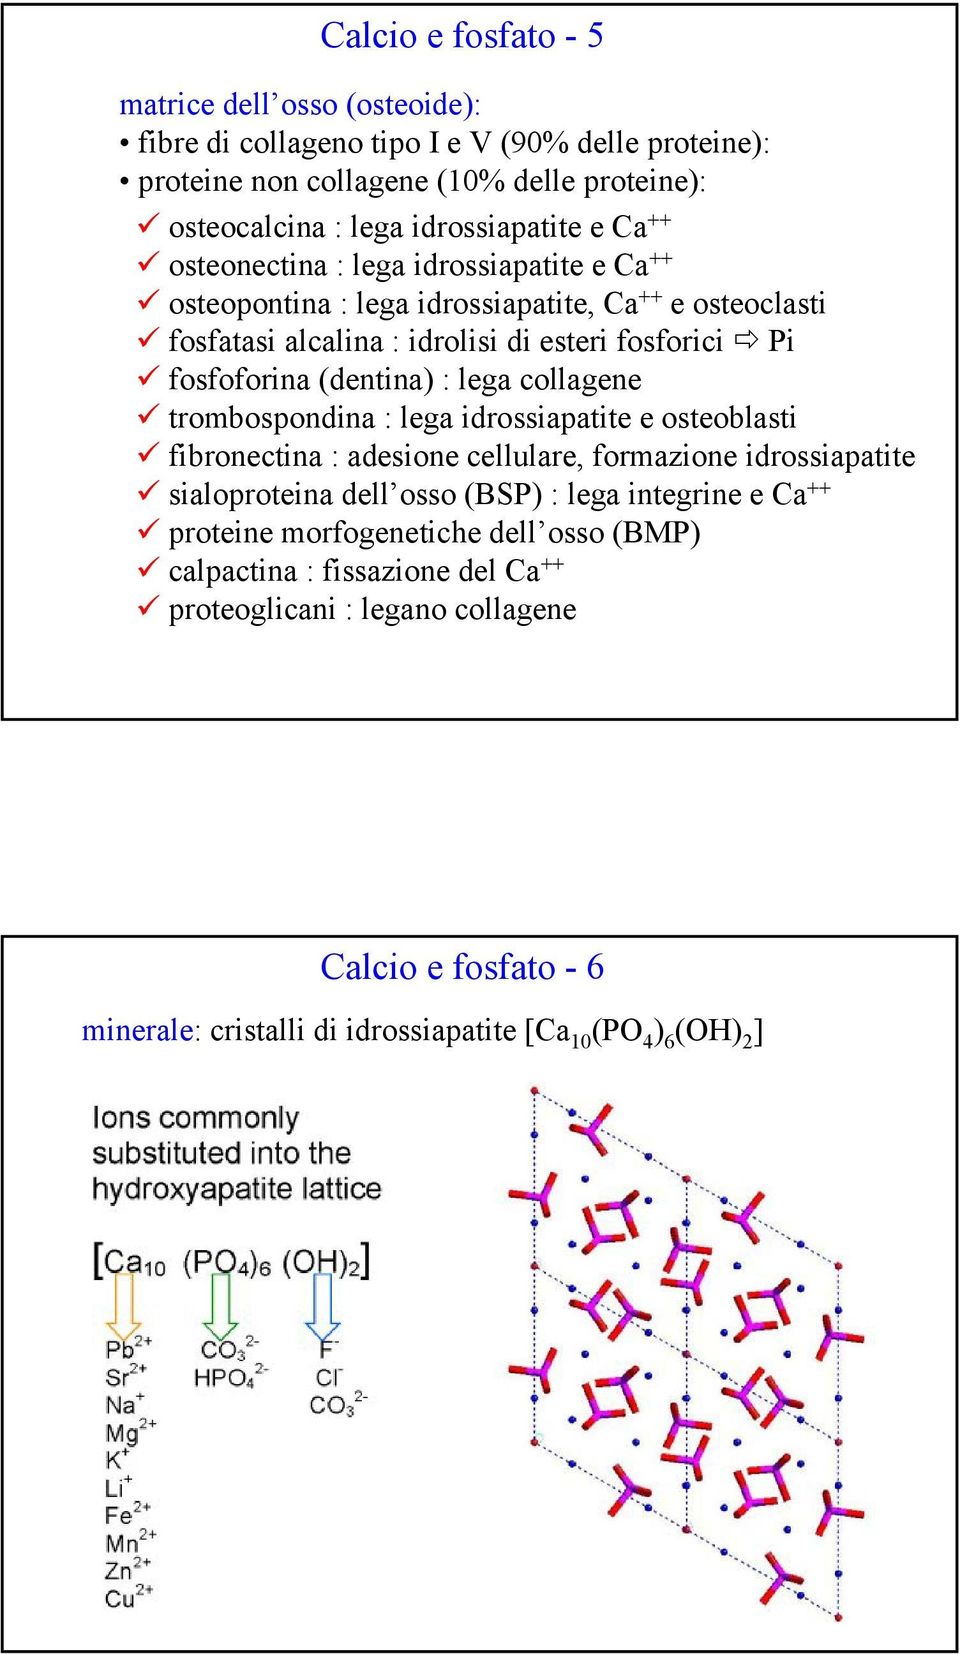 lega collagene trombospondina : lega idrossiapatite e osteoblasti fibronectina : adesione cellulare, formazione idrossiapatite sialoproteina dell osso (BSP) : lega integrine e Ca ++